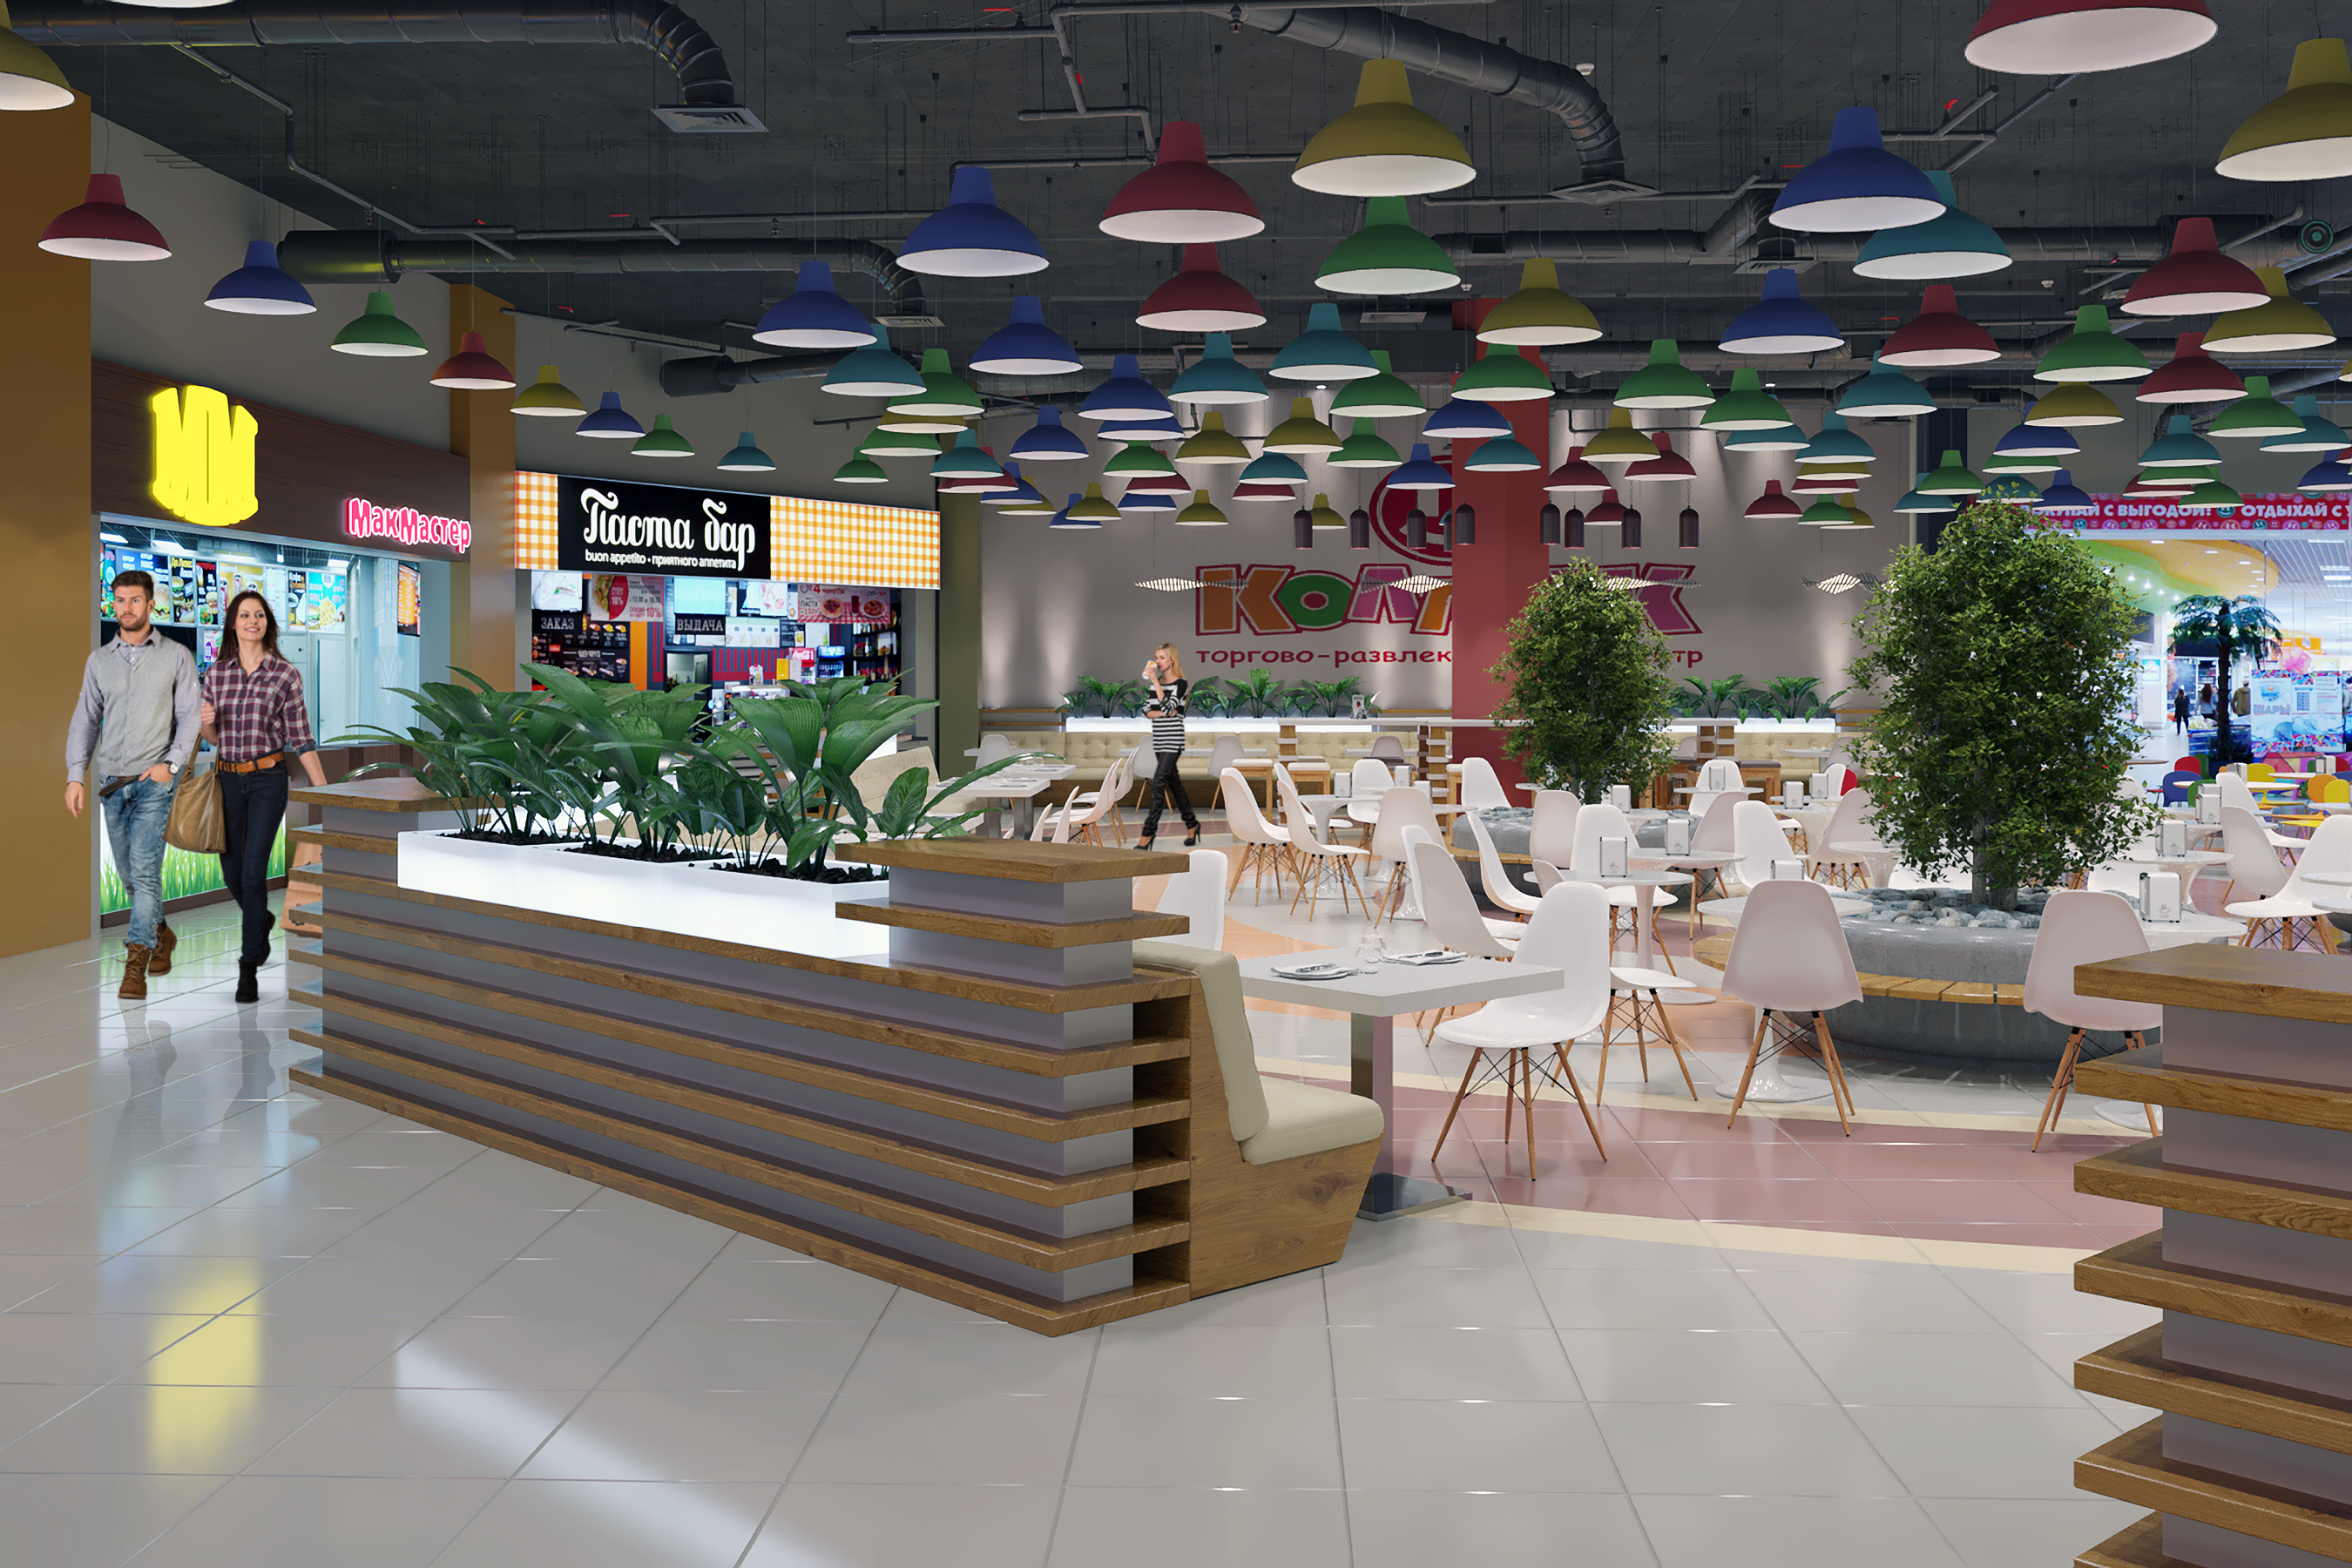 Foodcourt nel centro commerciale "Kollaz" in 3d max corona render immagine